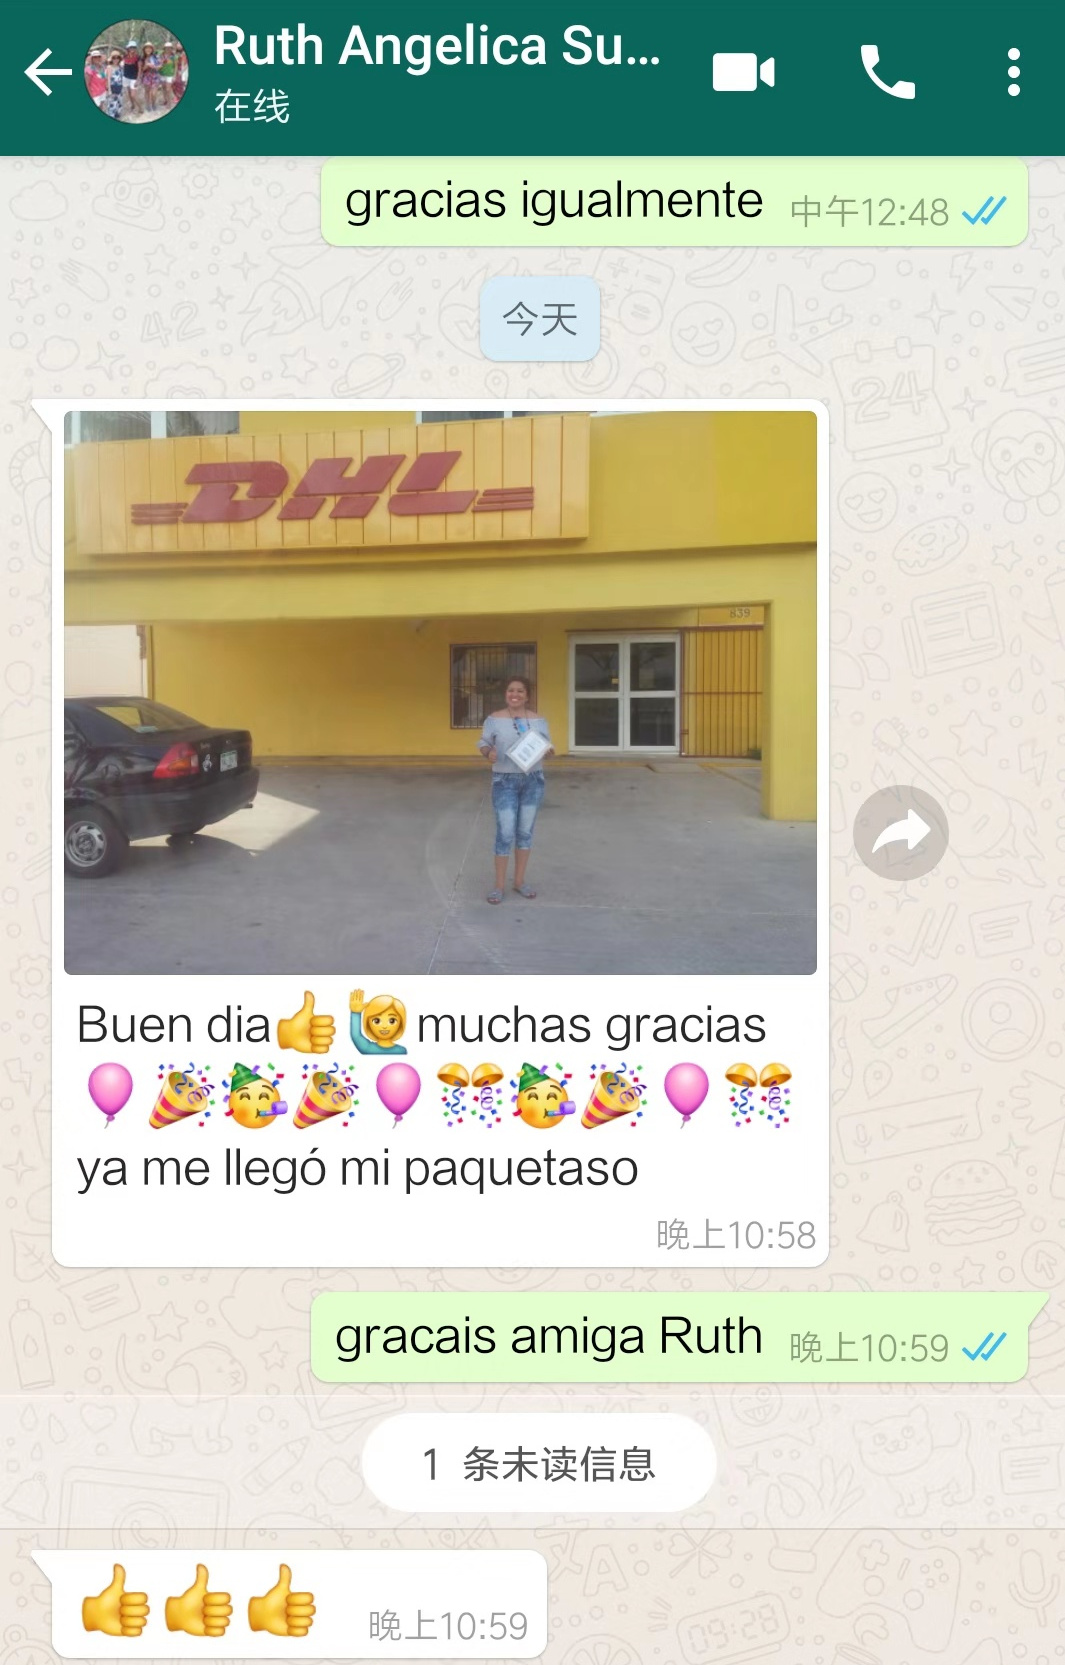 Mexico-Senora Ruth Angelicacomprio repuestos de plotters